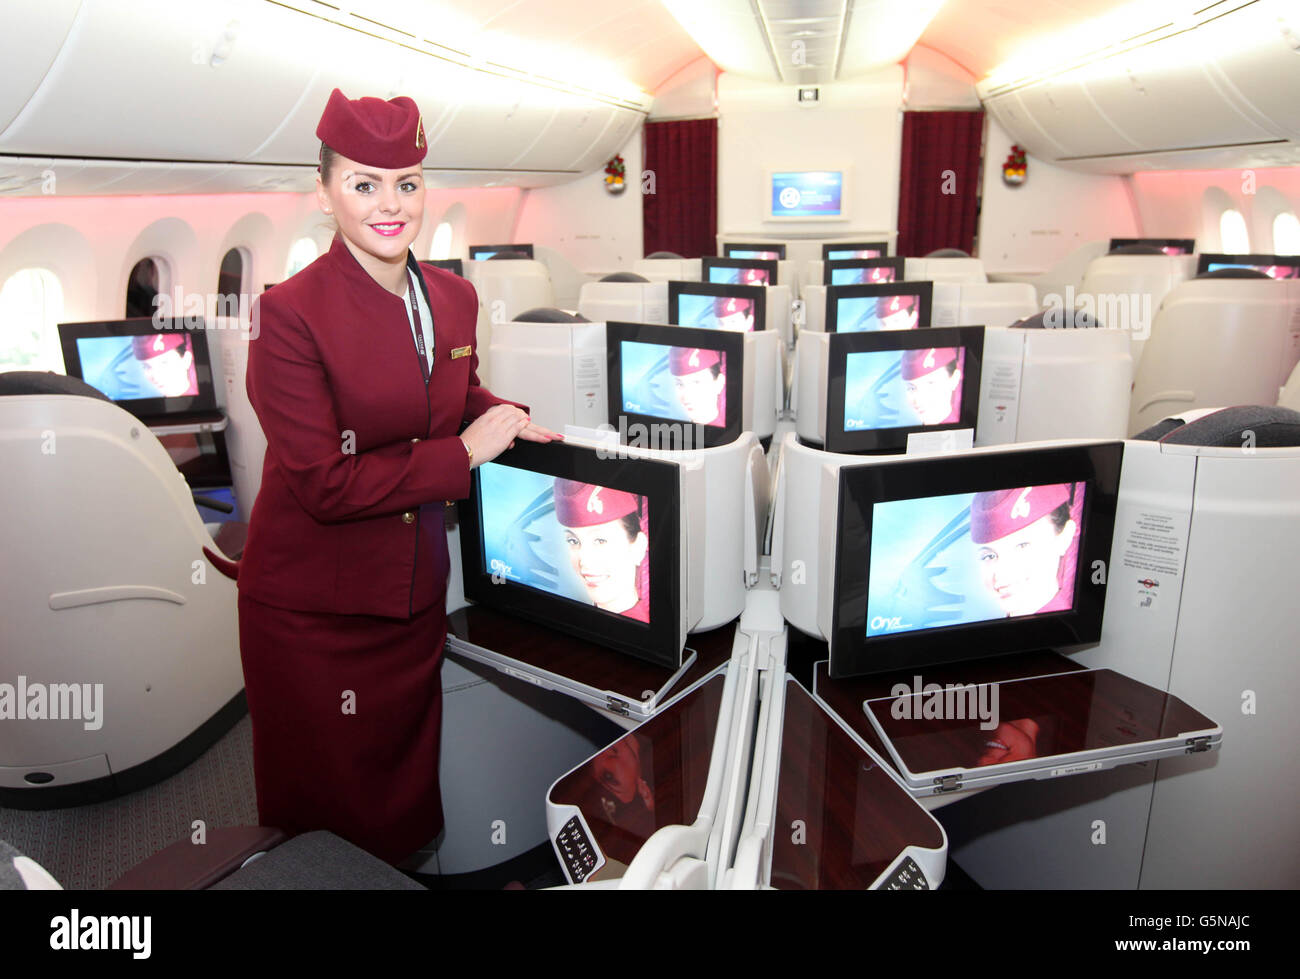 Claire Andrews, Qatar Airways si trova nella sezione business class del Dreamliner 787 presso l'aeroporto di Heathrow di Londra, in quanto il Qatar diventa la prima compagnia aerea a gestire voli di linea regolari con il Dreamliner 787 da e per il Regno Unito. Foto Stock